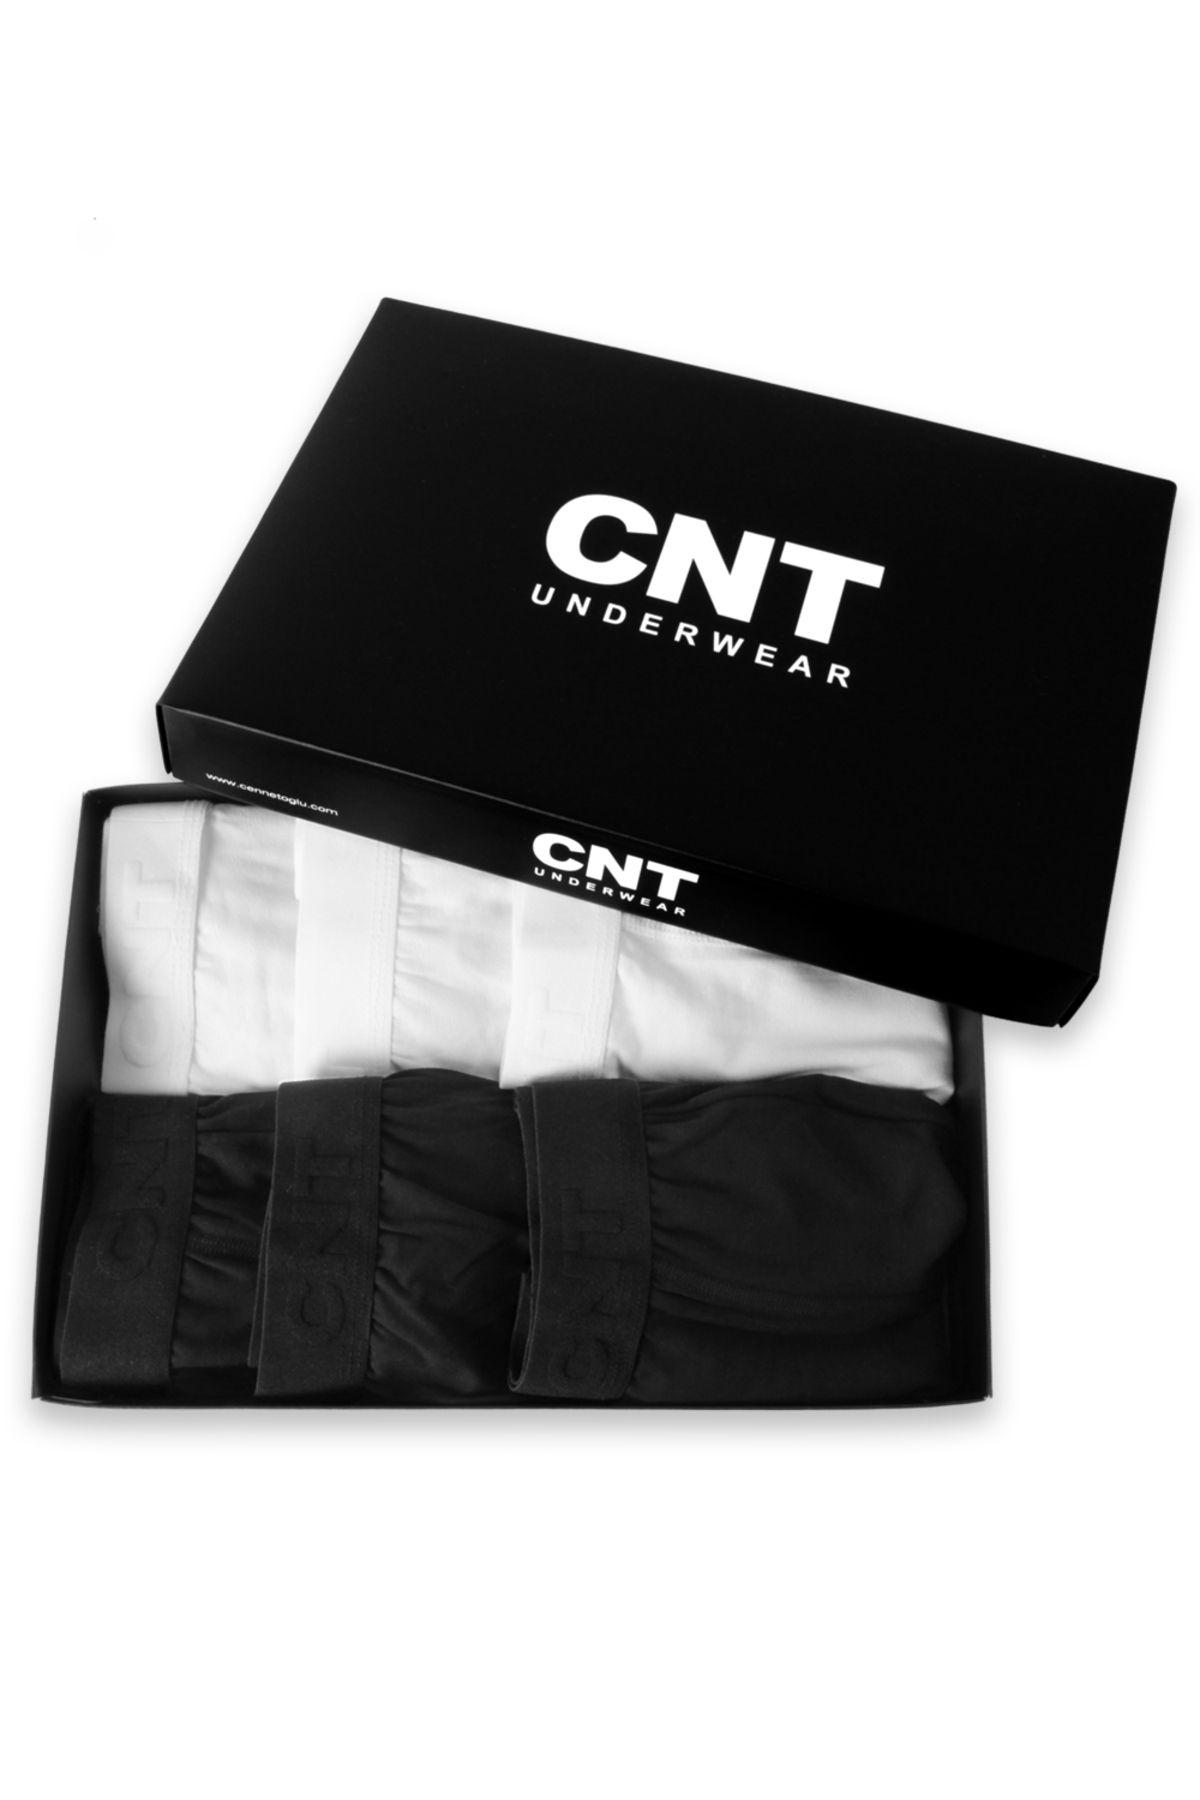 CNT Erkek Boxer Likralı 6'lı Premium Paket